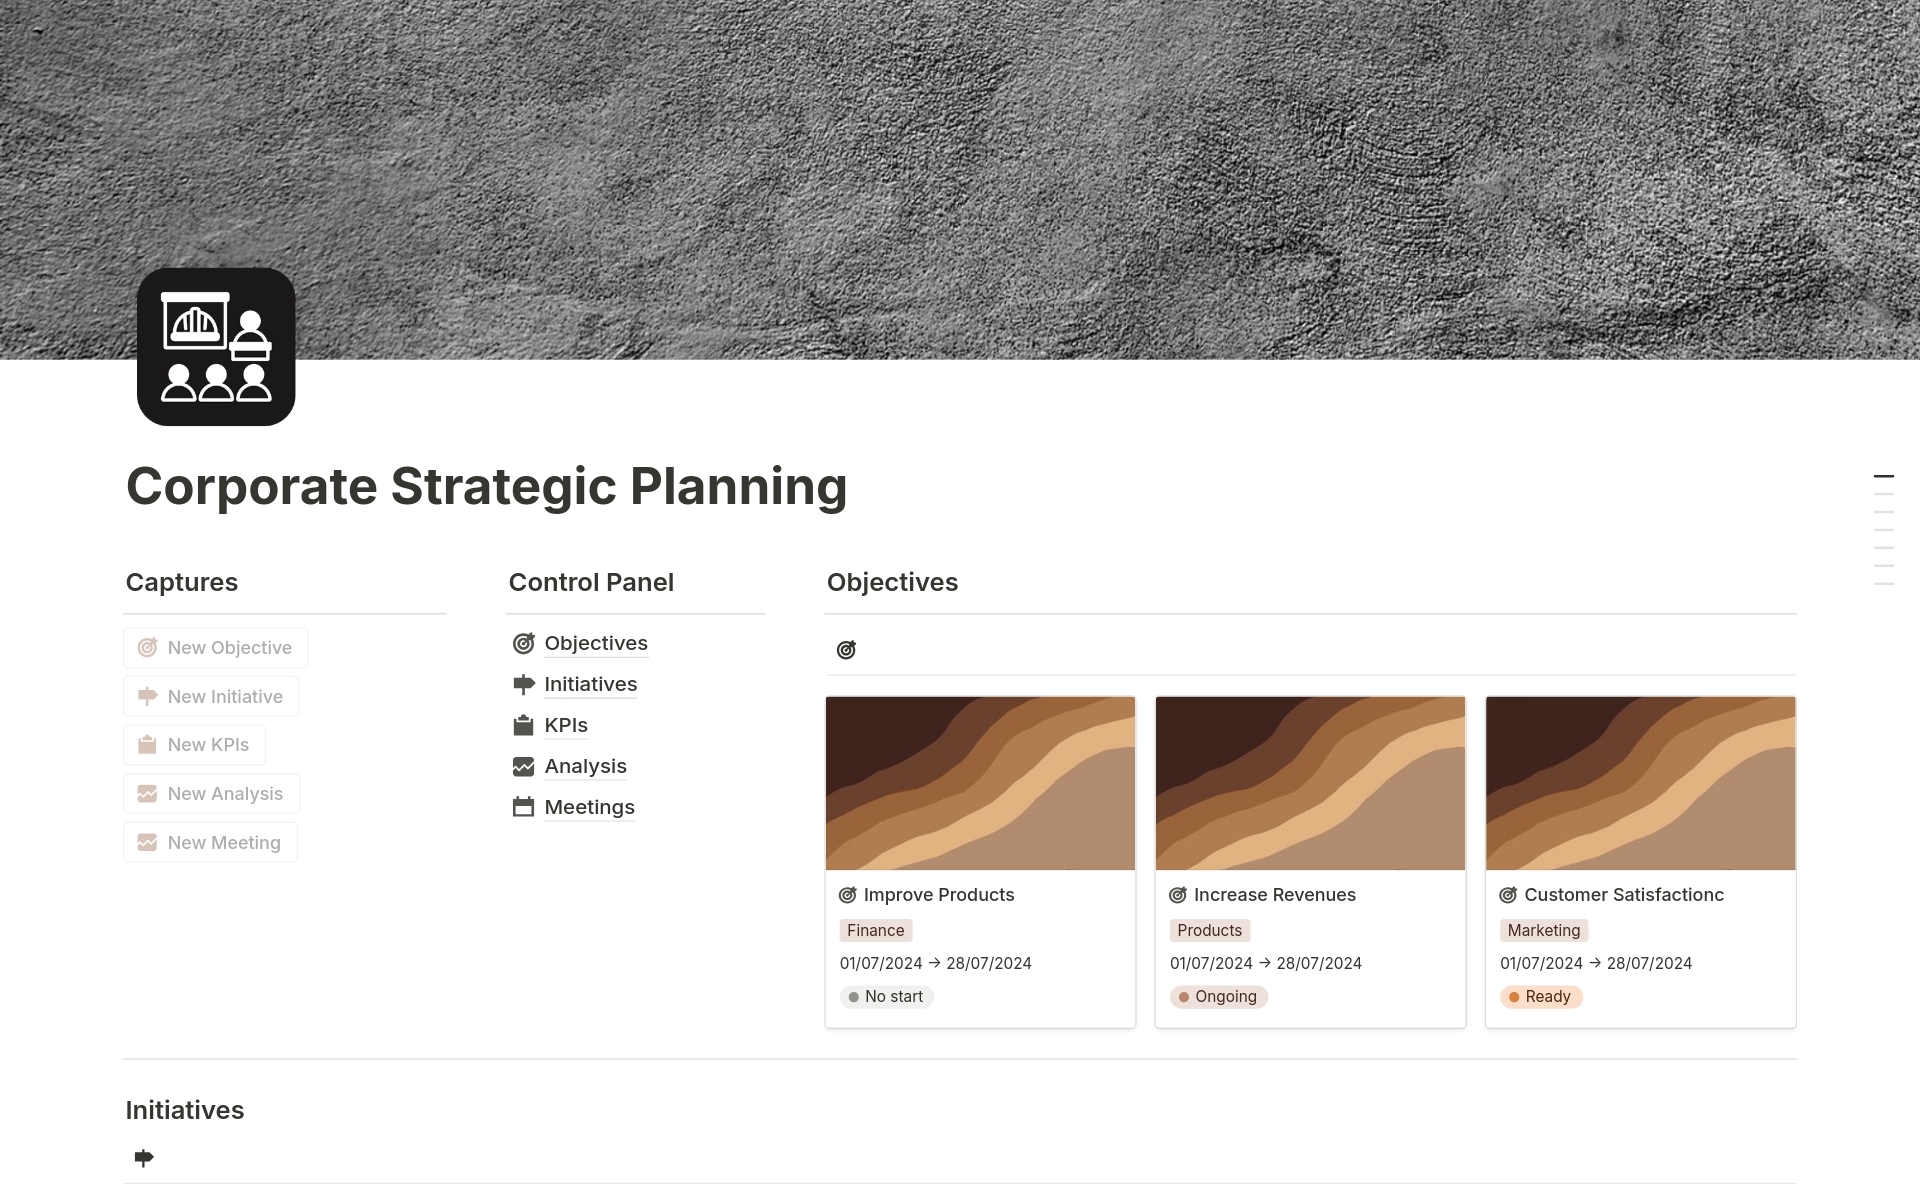 Uma prévia do modelo para Corporate Strategic Planning 